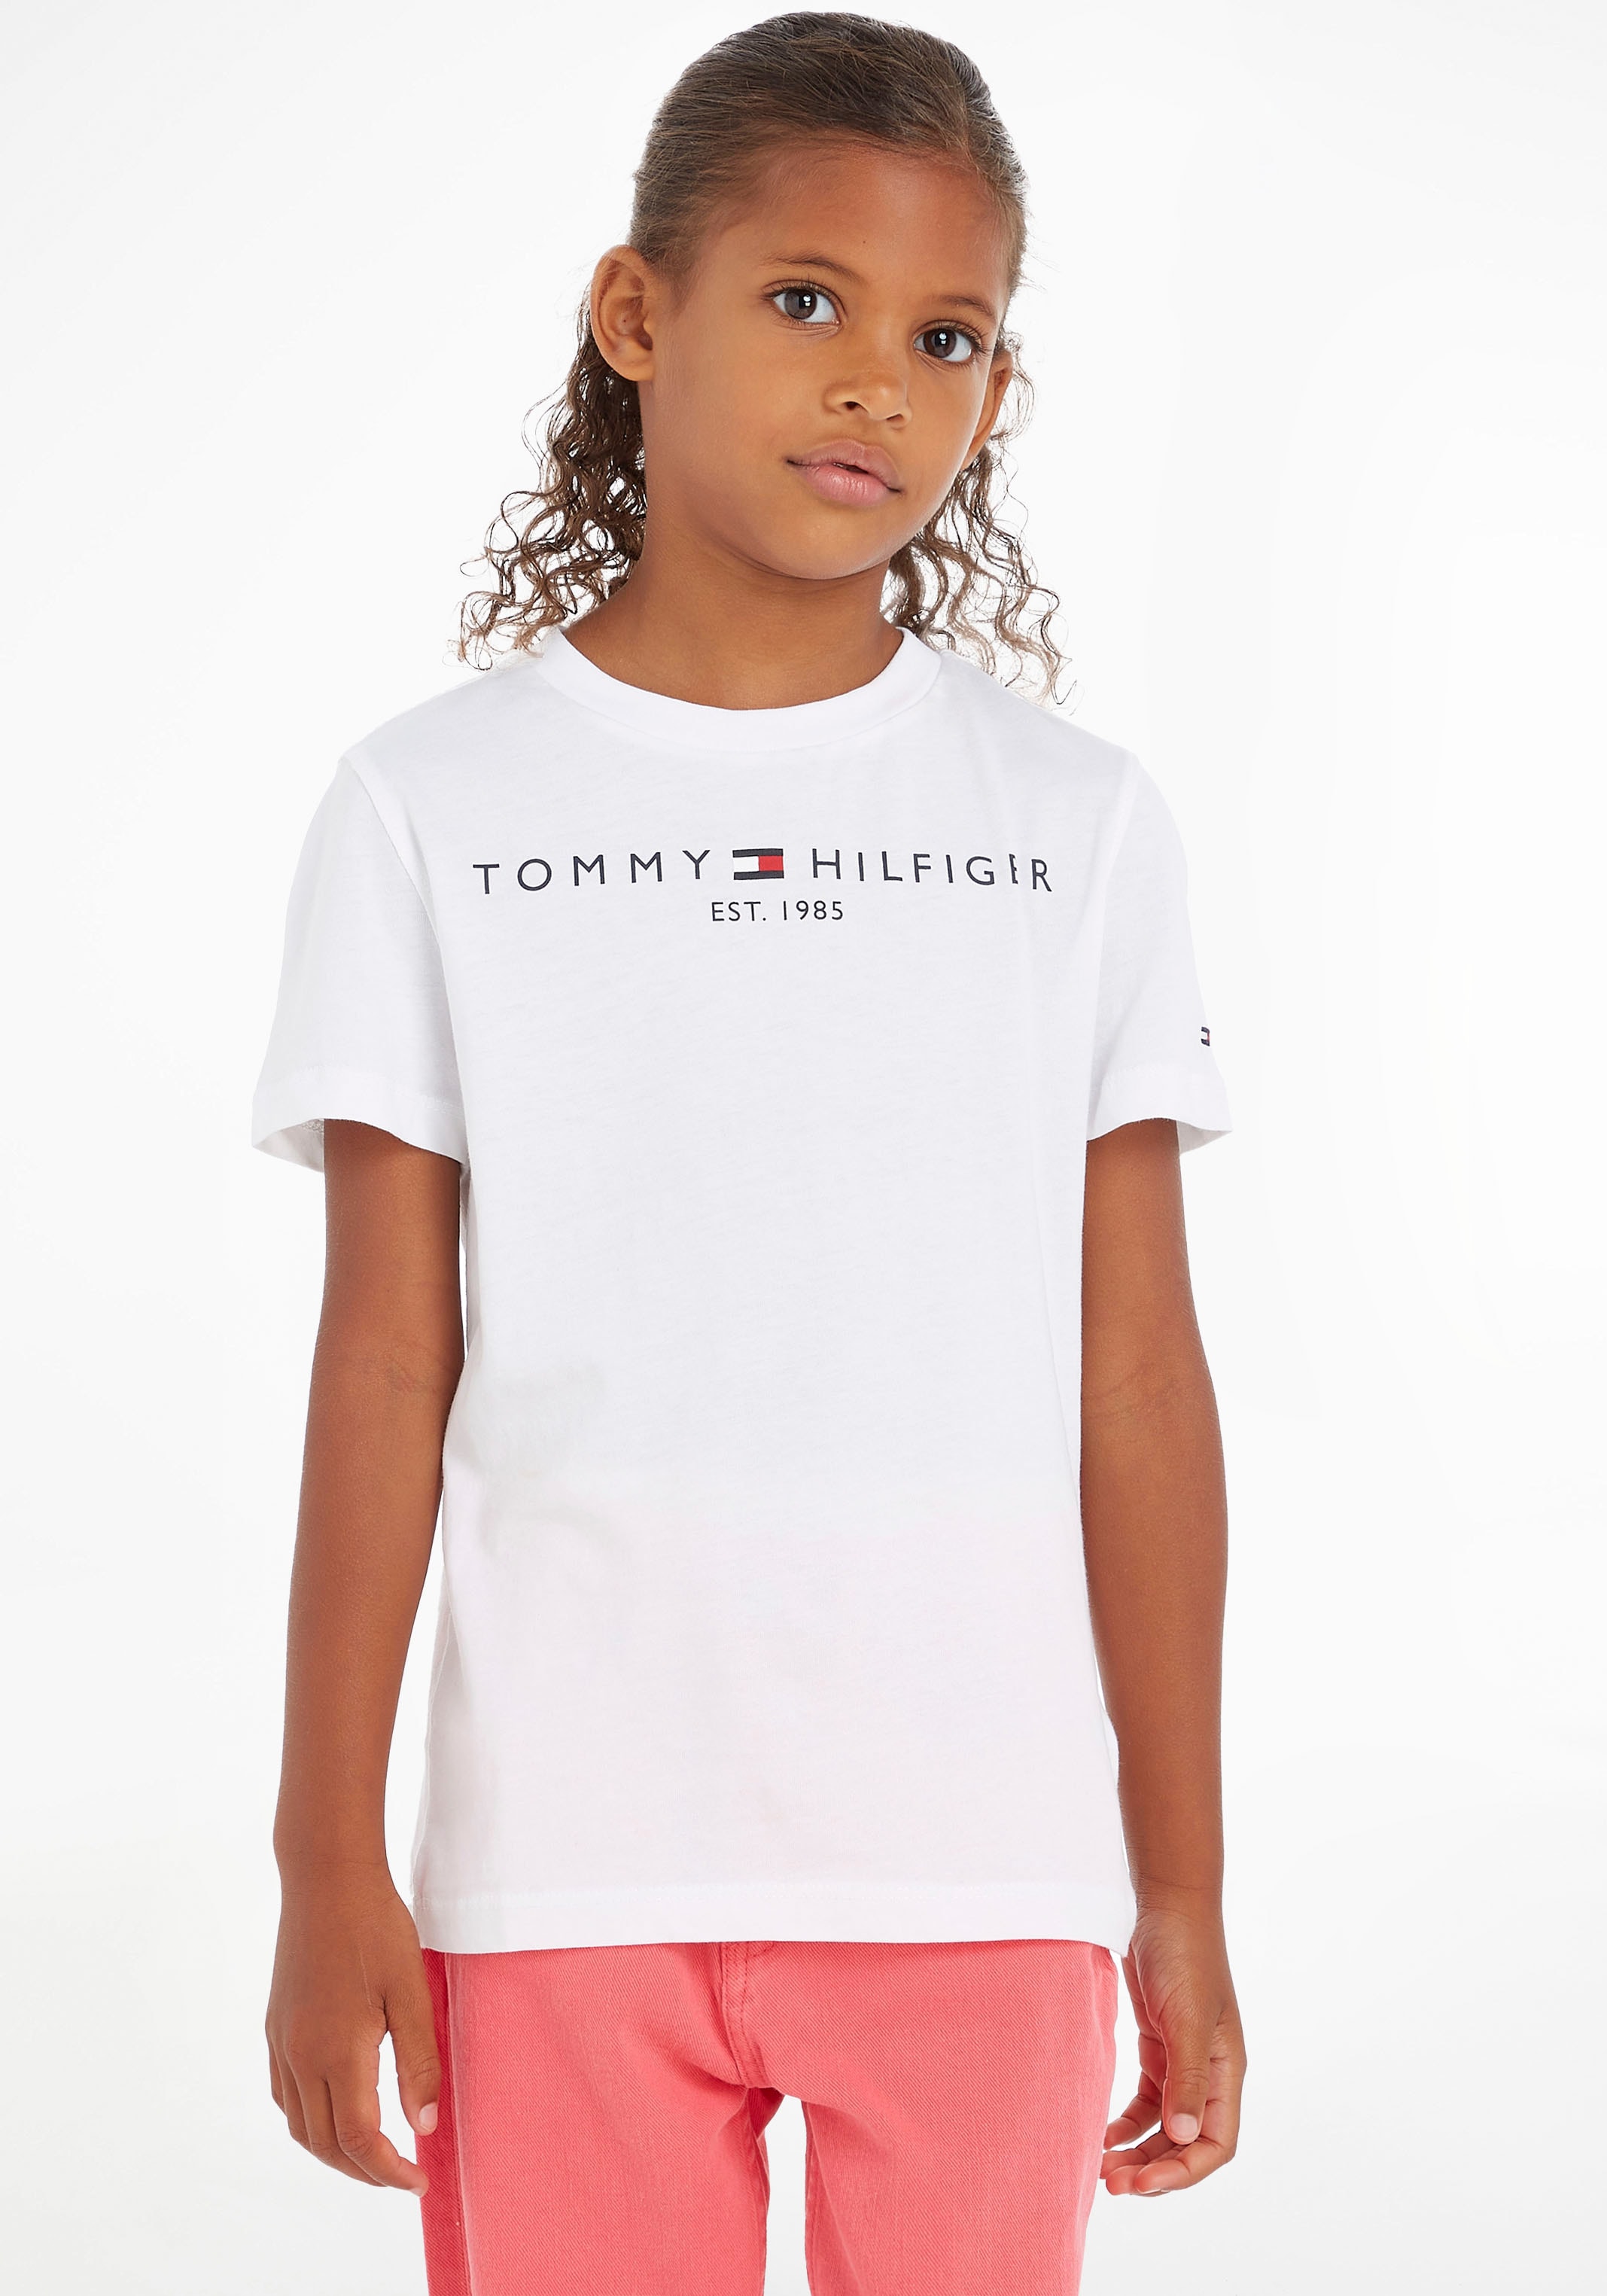 Trendige Tommy Hilfiger T-Shirt »ESSENTIAL TEE«, Kinder Kids Junior  MiniMe,für Jungen und Mädchen versandkostenfrei shoppen